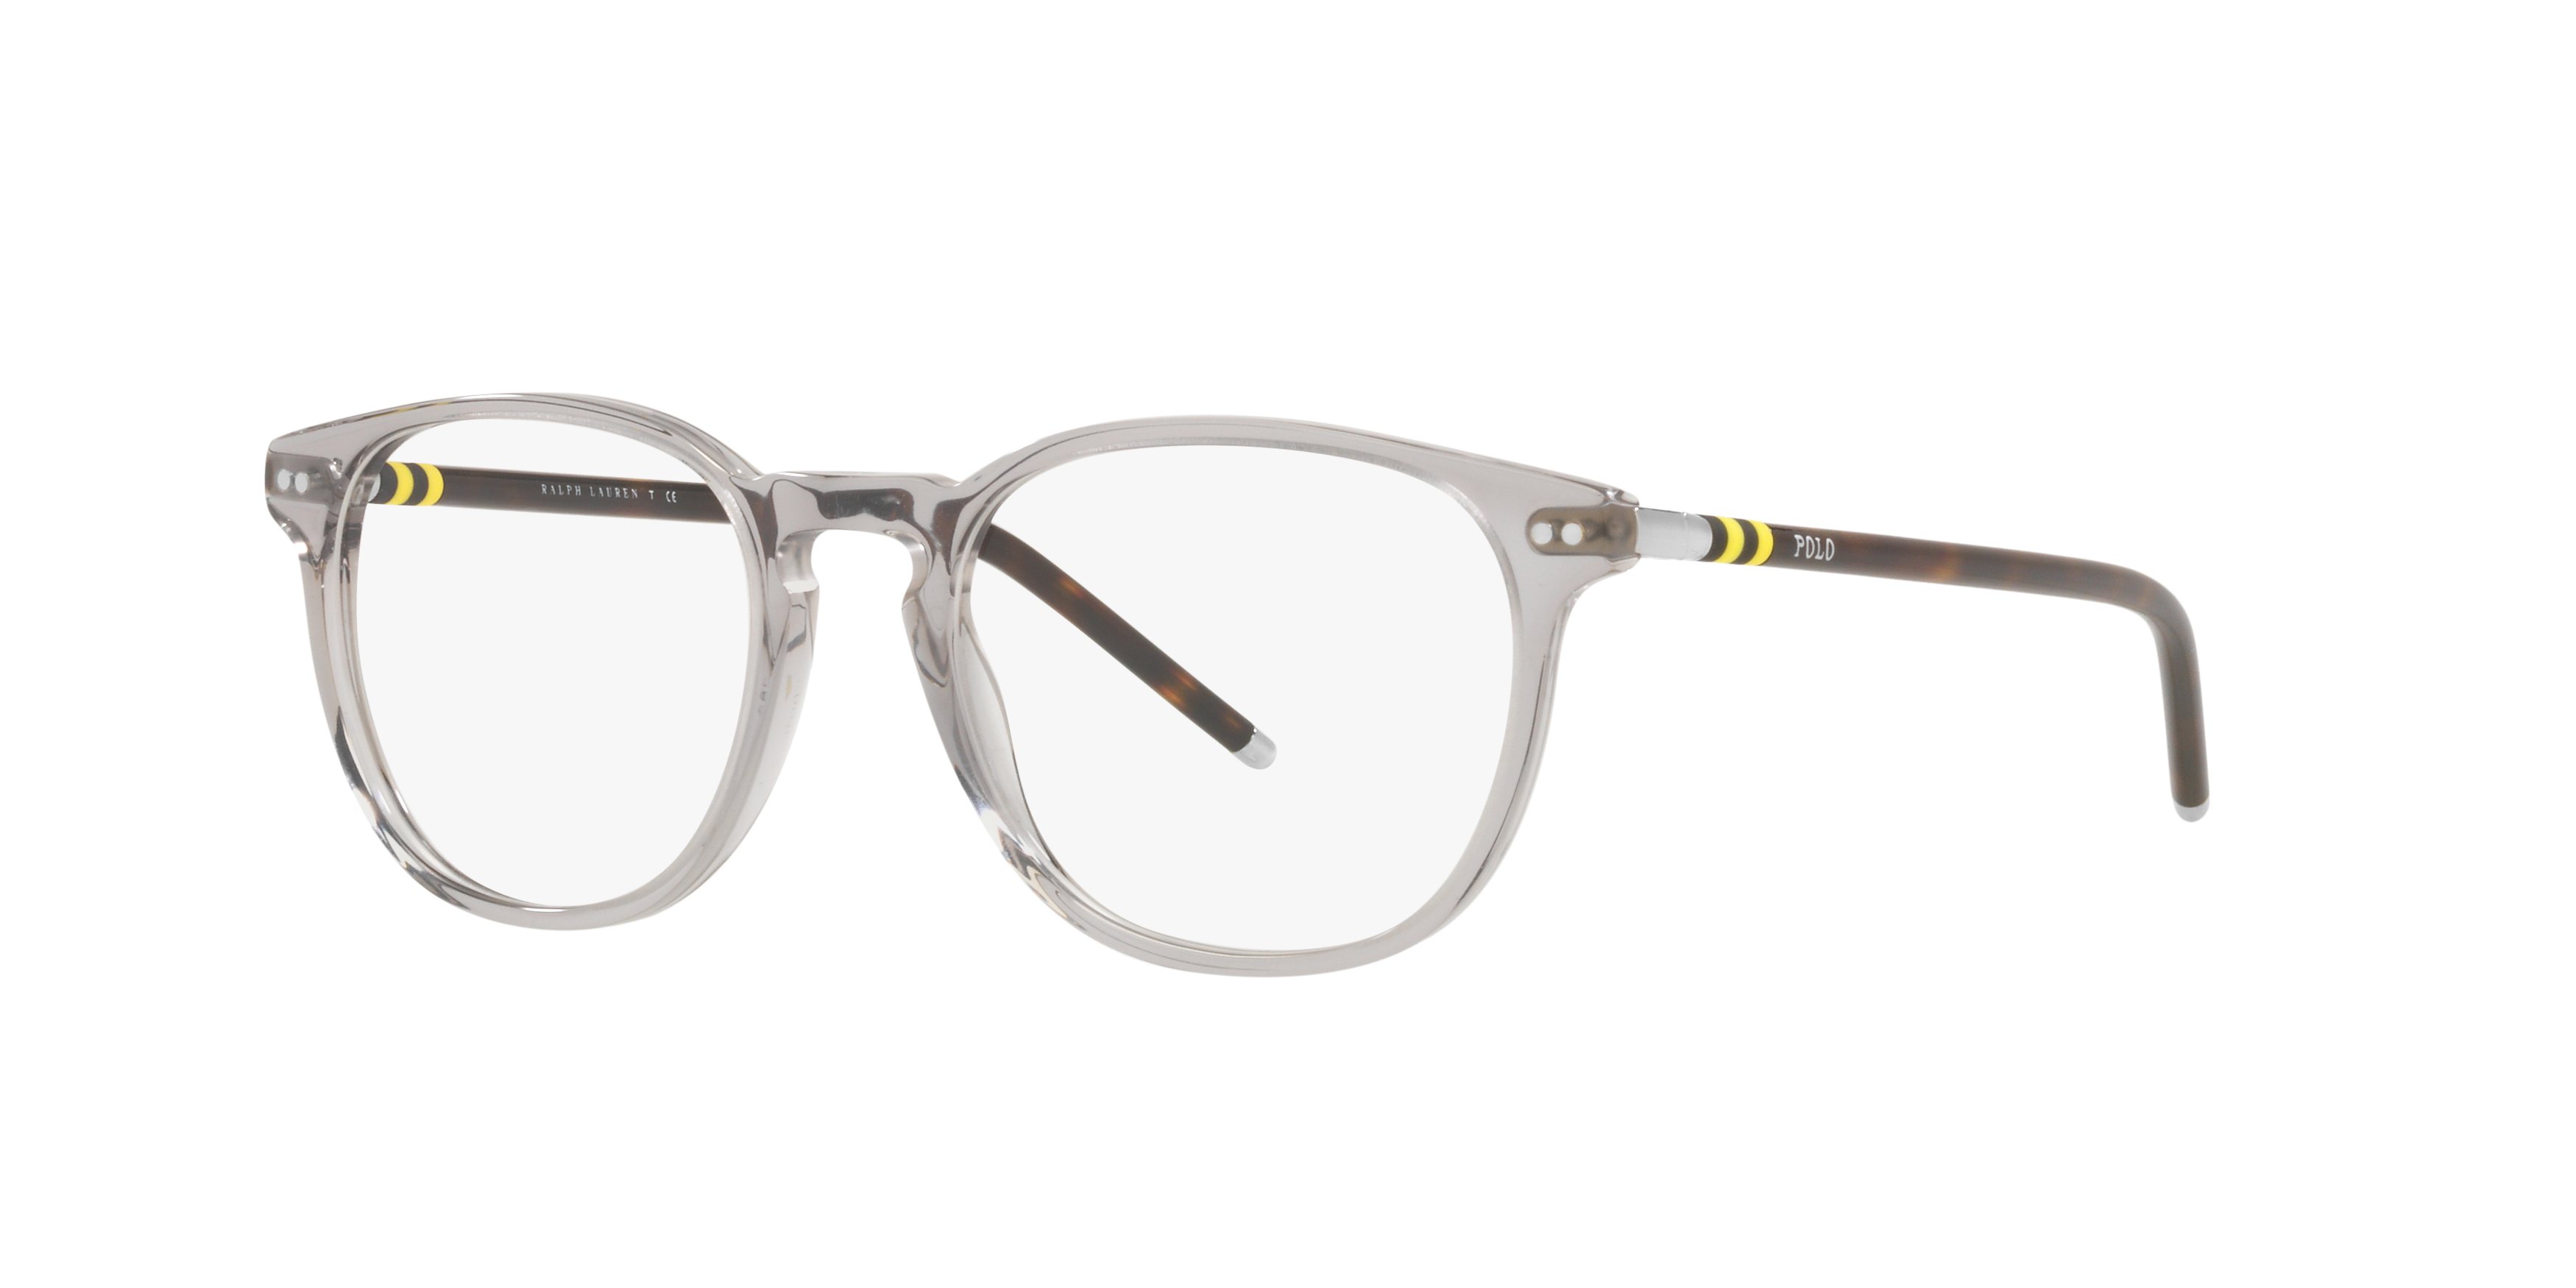 Angle_Left01 Polo Ralph Lauren PH 2225 Glasses Transparent / Tortoise Shell